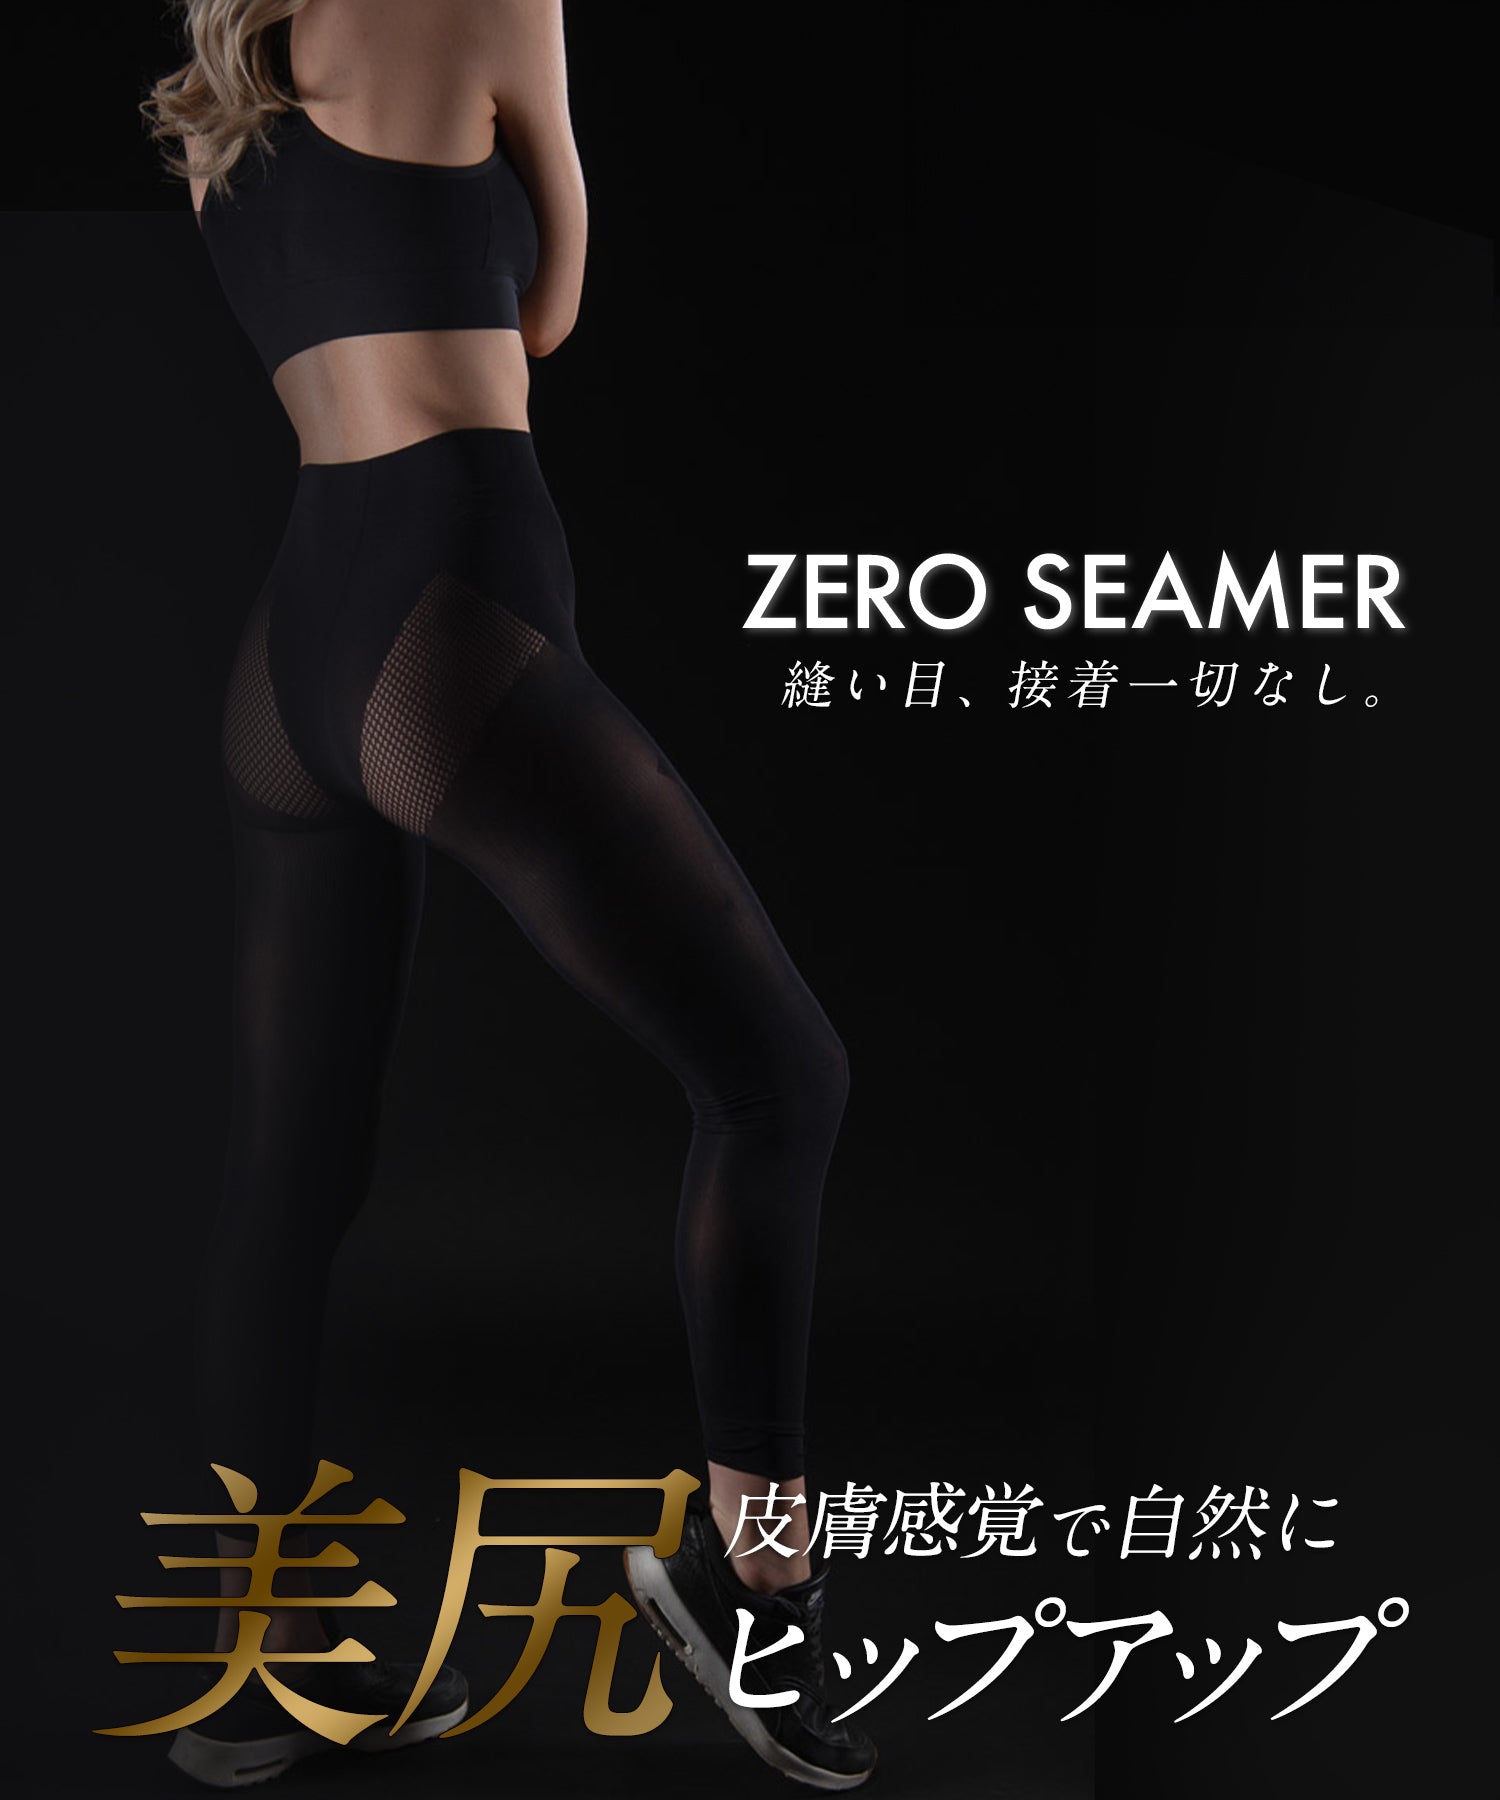 Zero seamer (leggings for women)